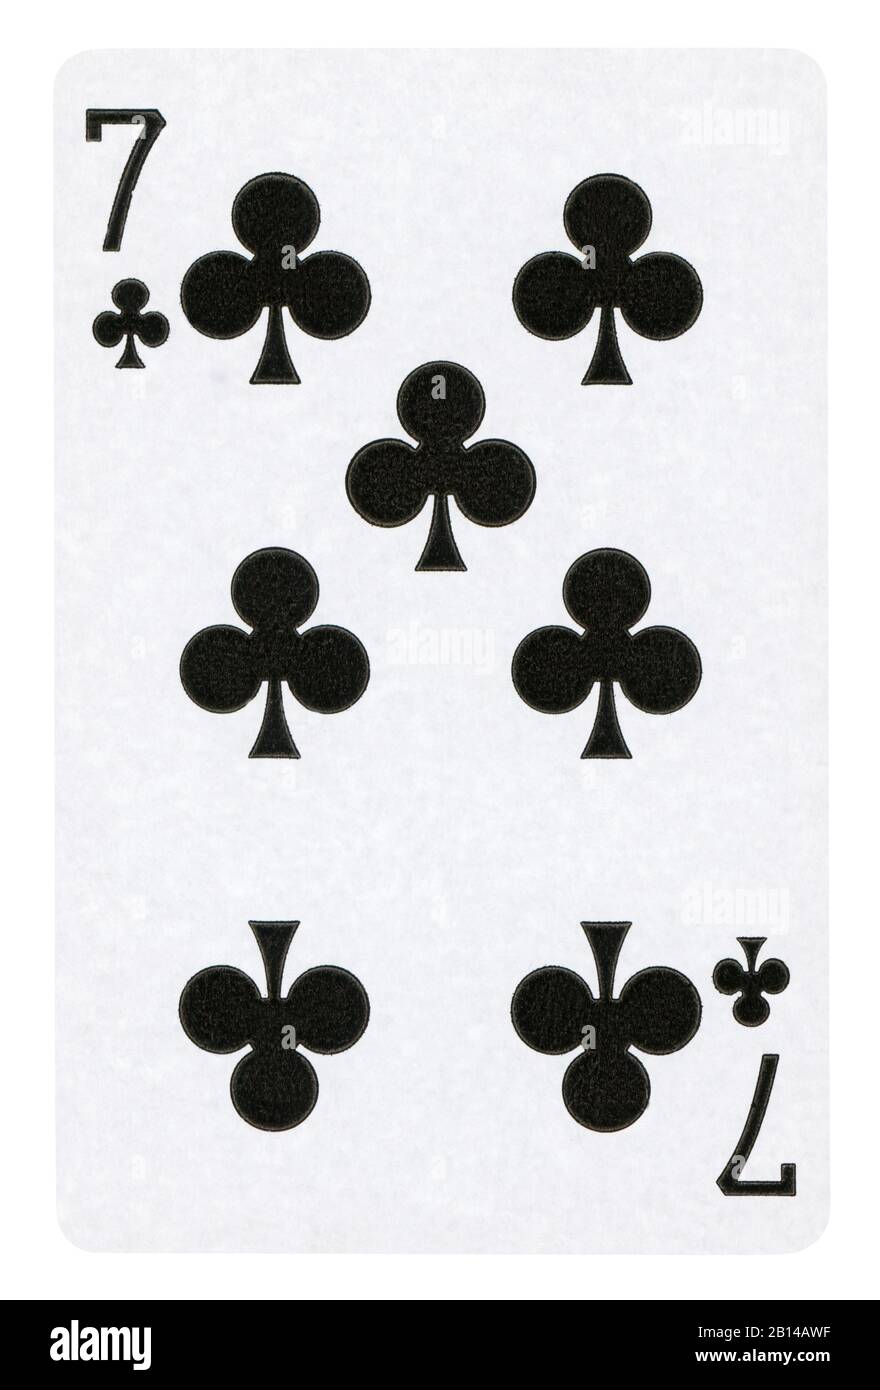 Sieben Vereine Vintage Playing Card - isoliert auf weißem (clipping path enthalten) Stockfoto